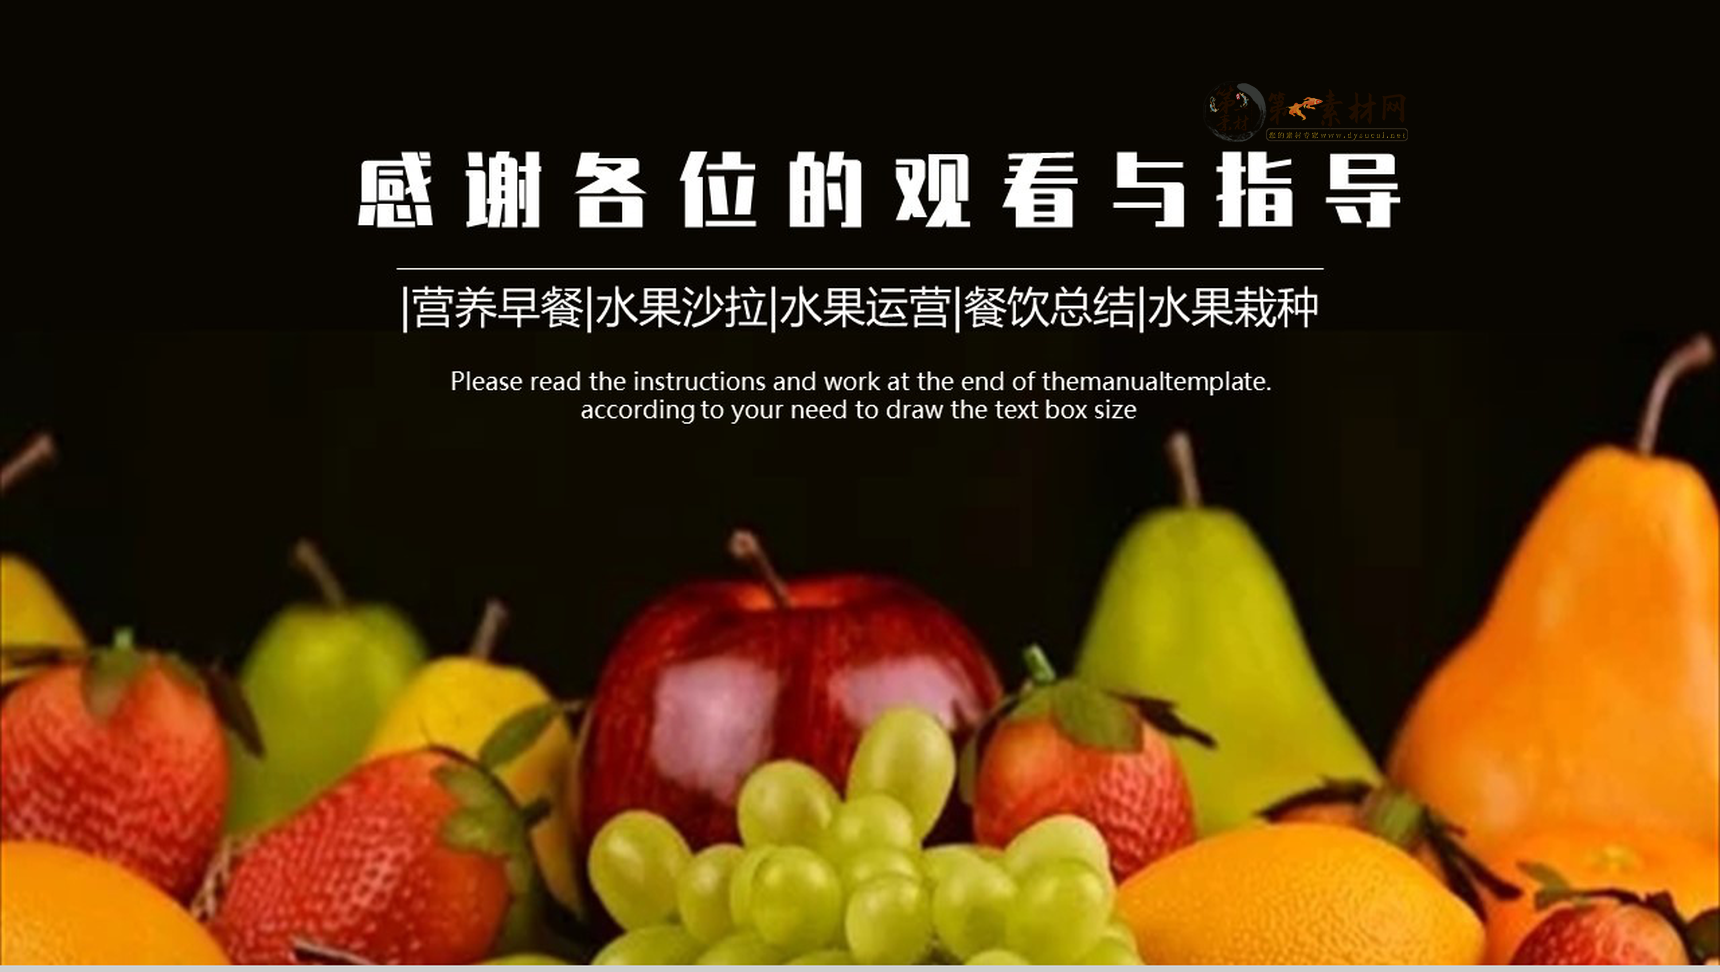 健康饮食水果果蔬营养搭配PPT模板-10